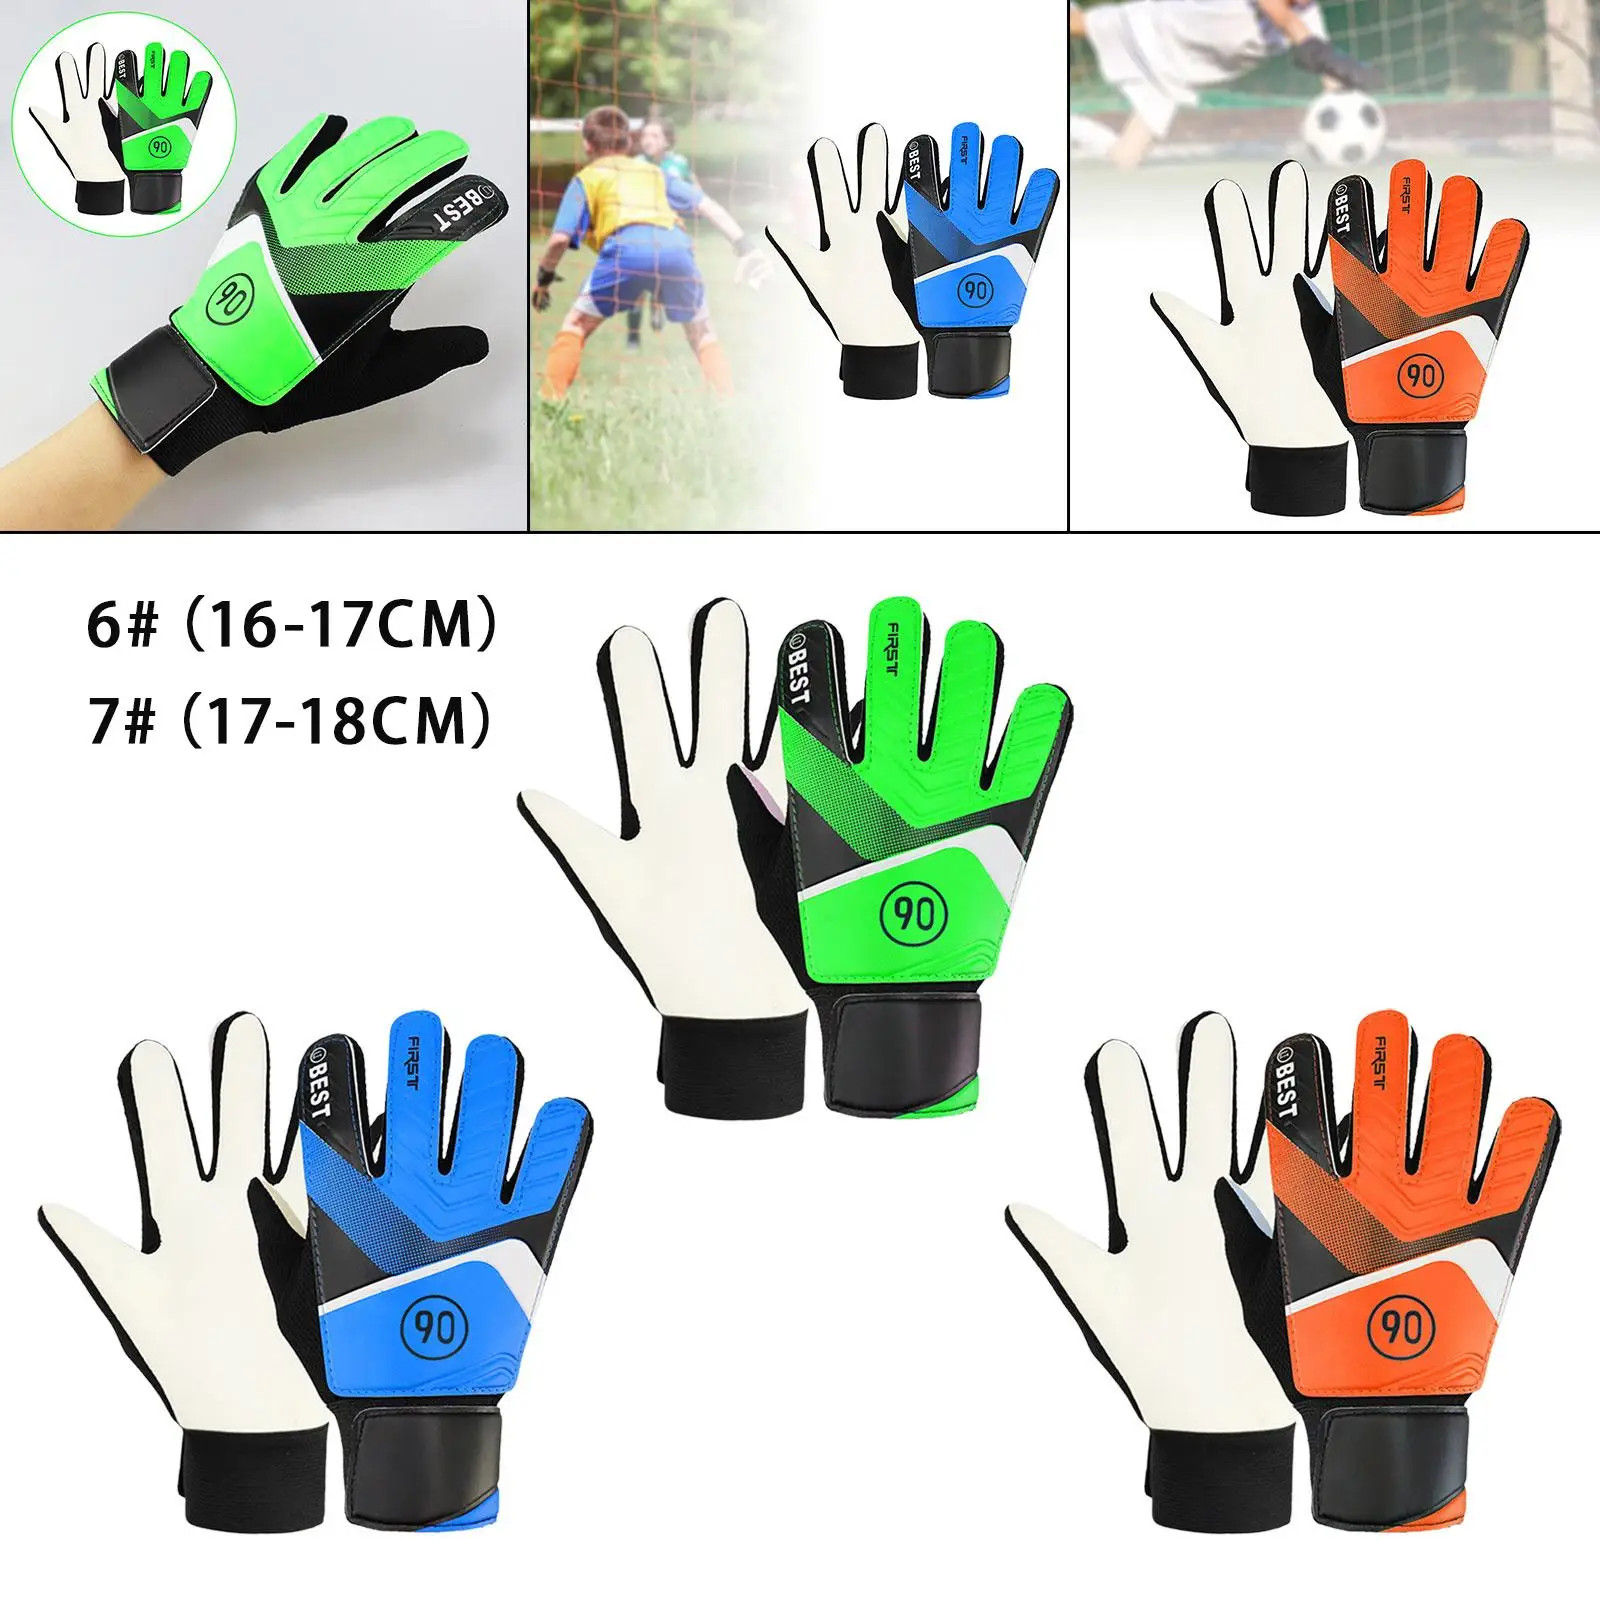 Soccer Goalkeeper Gloves Soccer Gloves High Performance Breathable Nonslip Latex Foam Padding Soccer Goalie Gloves for Kids